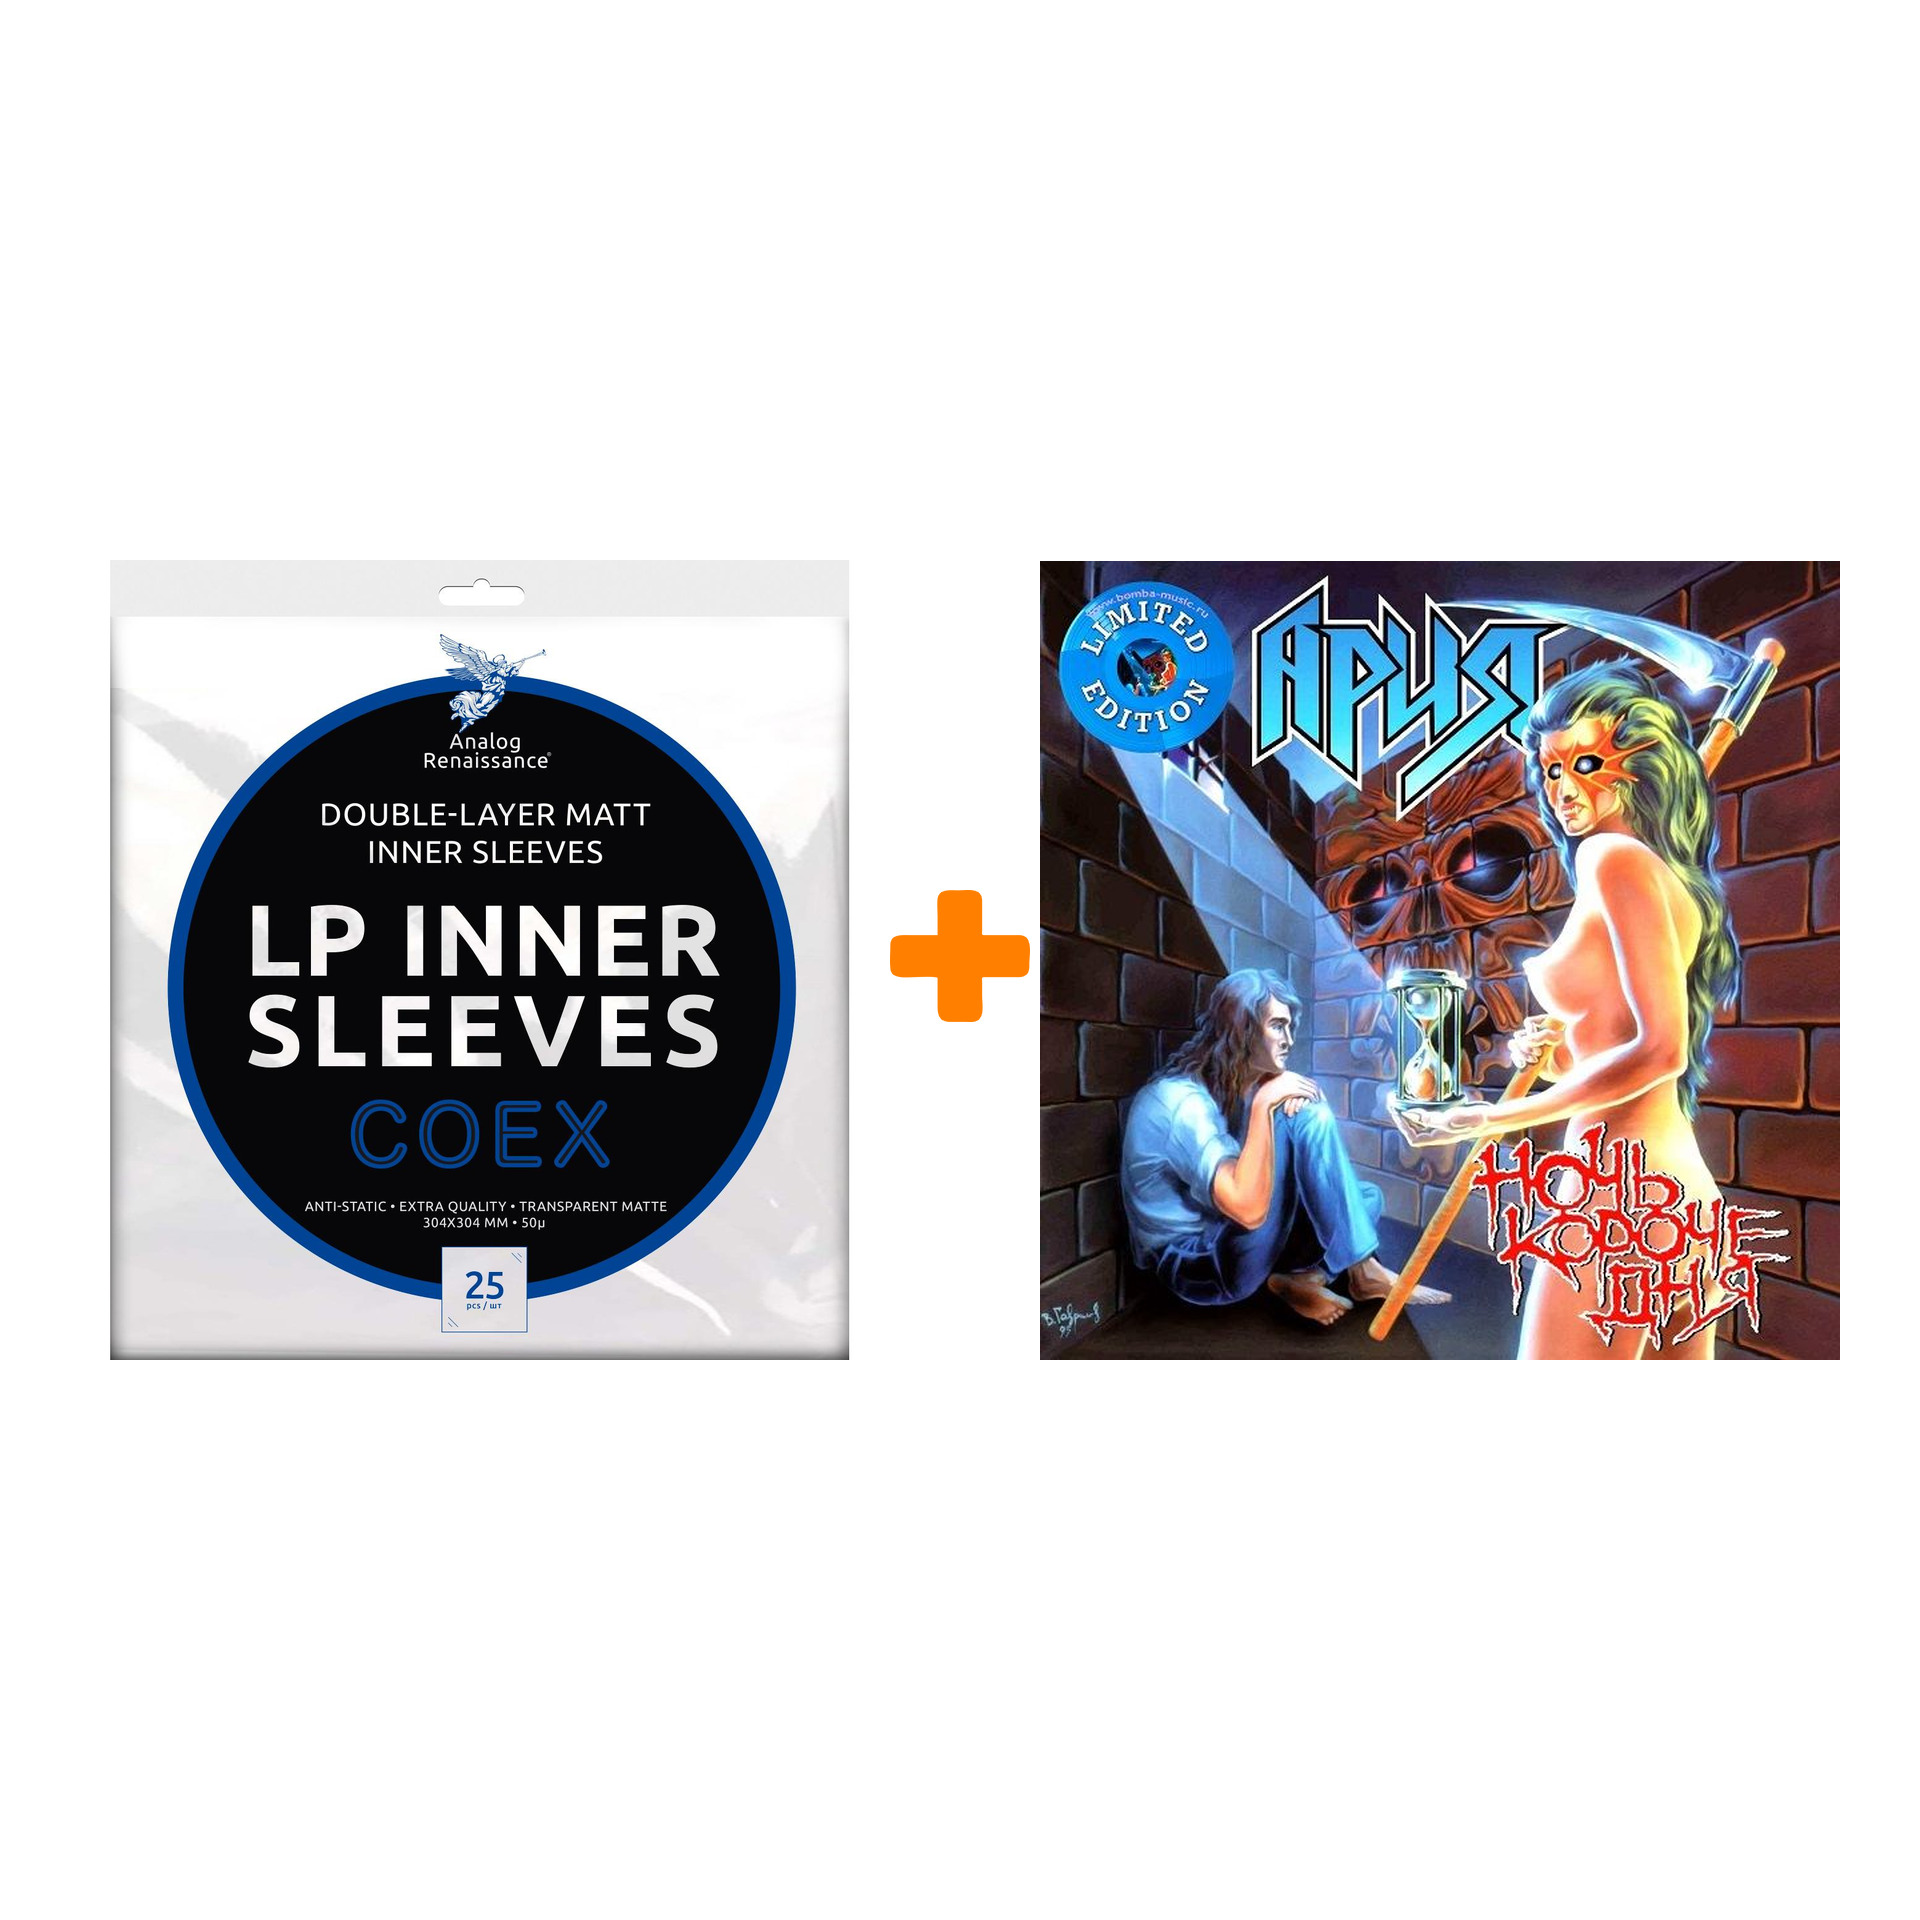 АРИЯ Ночь короче дня Coloured Crystal Blue Vinyl LP + Конверты внутренние COEX для грампластинок 12 25шт Набор цена и фото